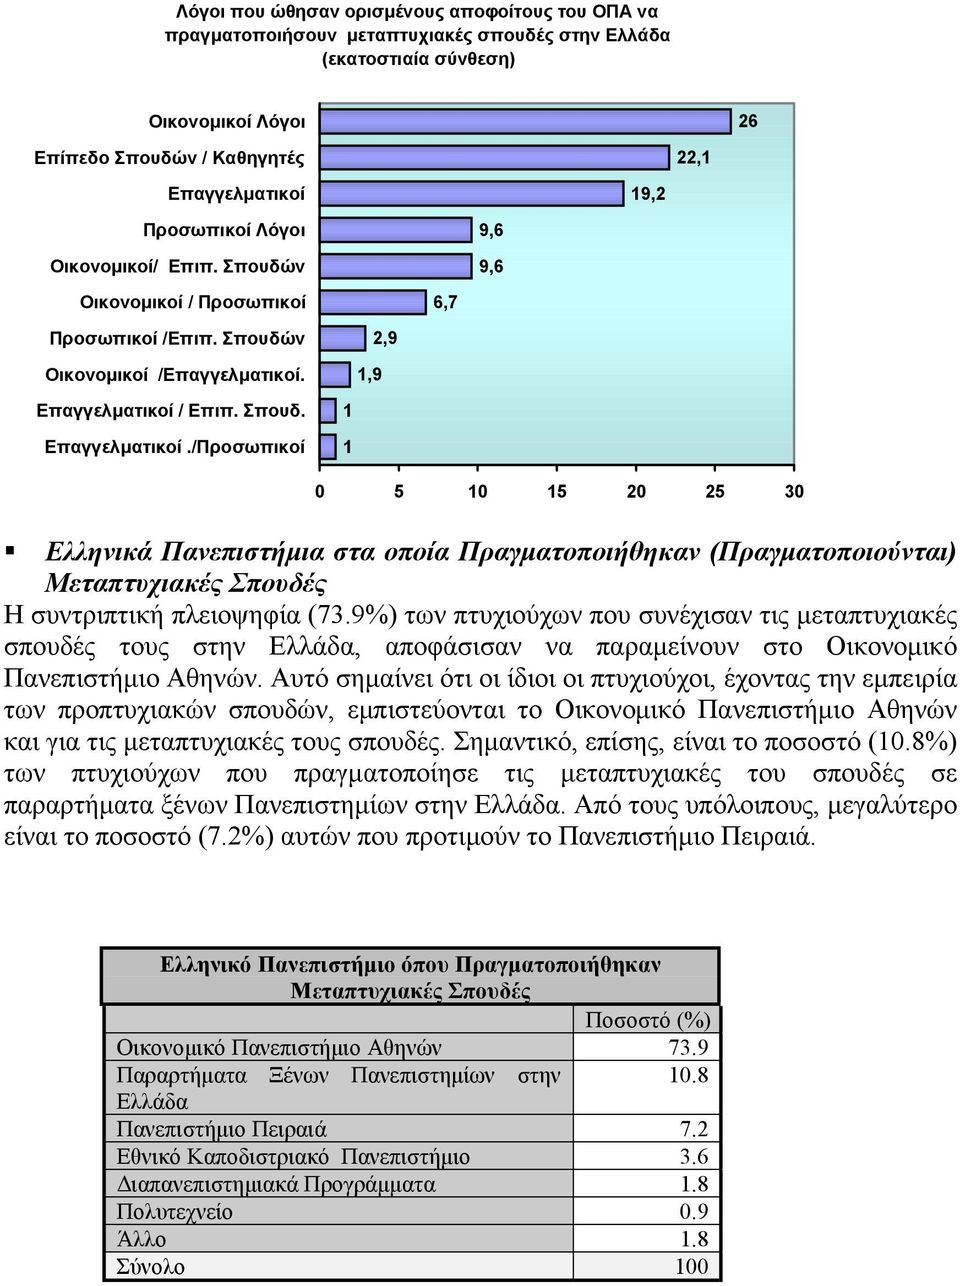 Ελληνικά Πανεπιστήμια στα οποία Πραγματοποιήθηκαν (Πραγματοποιούνται) Μεταπτυχιακές Σπουδές Η συντριπτική πλειοψηφία (73.